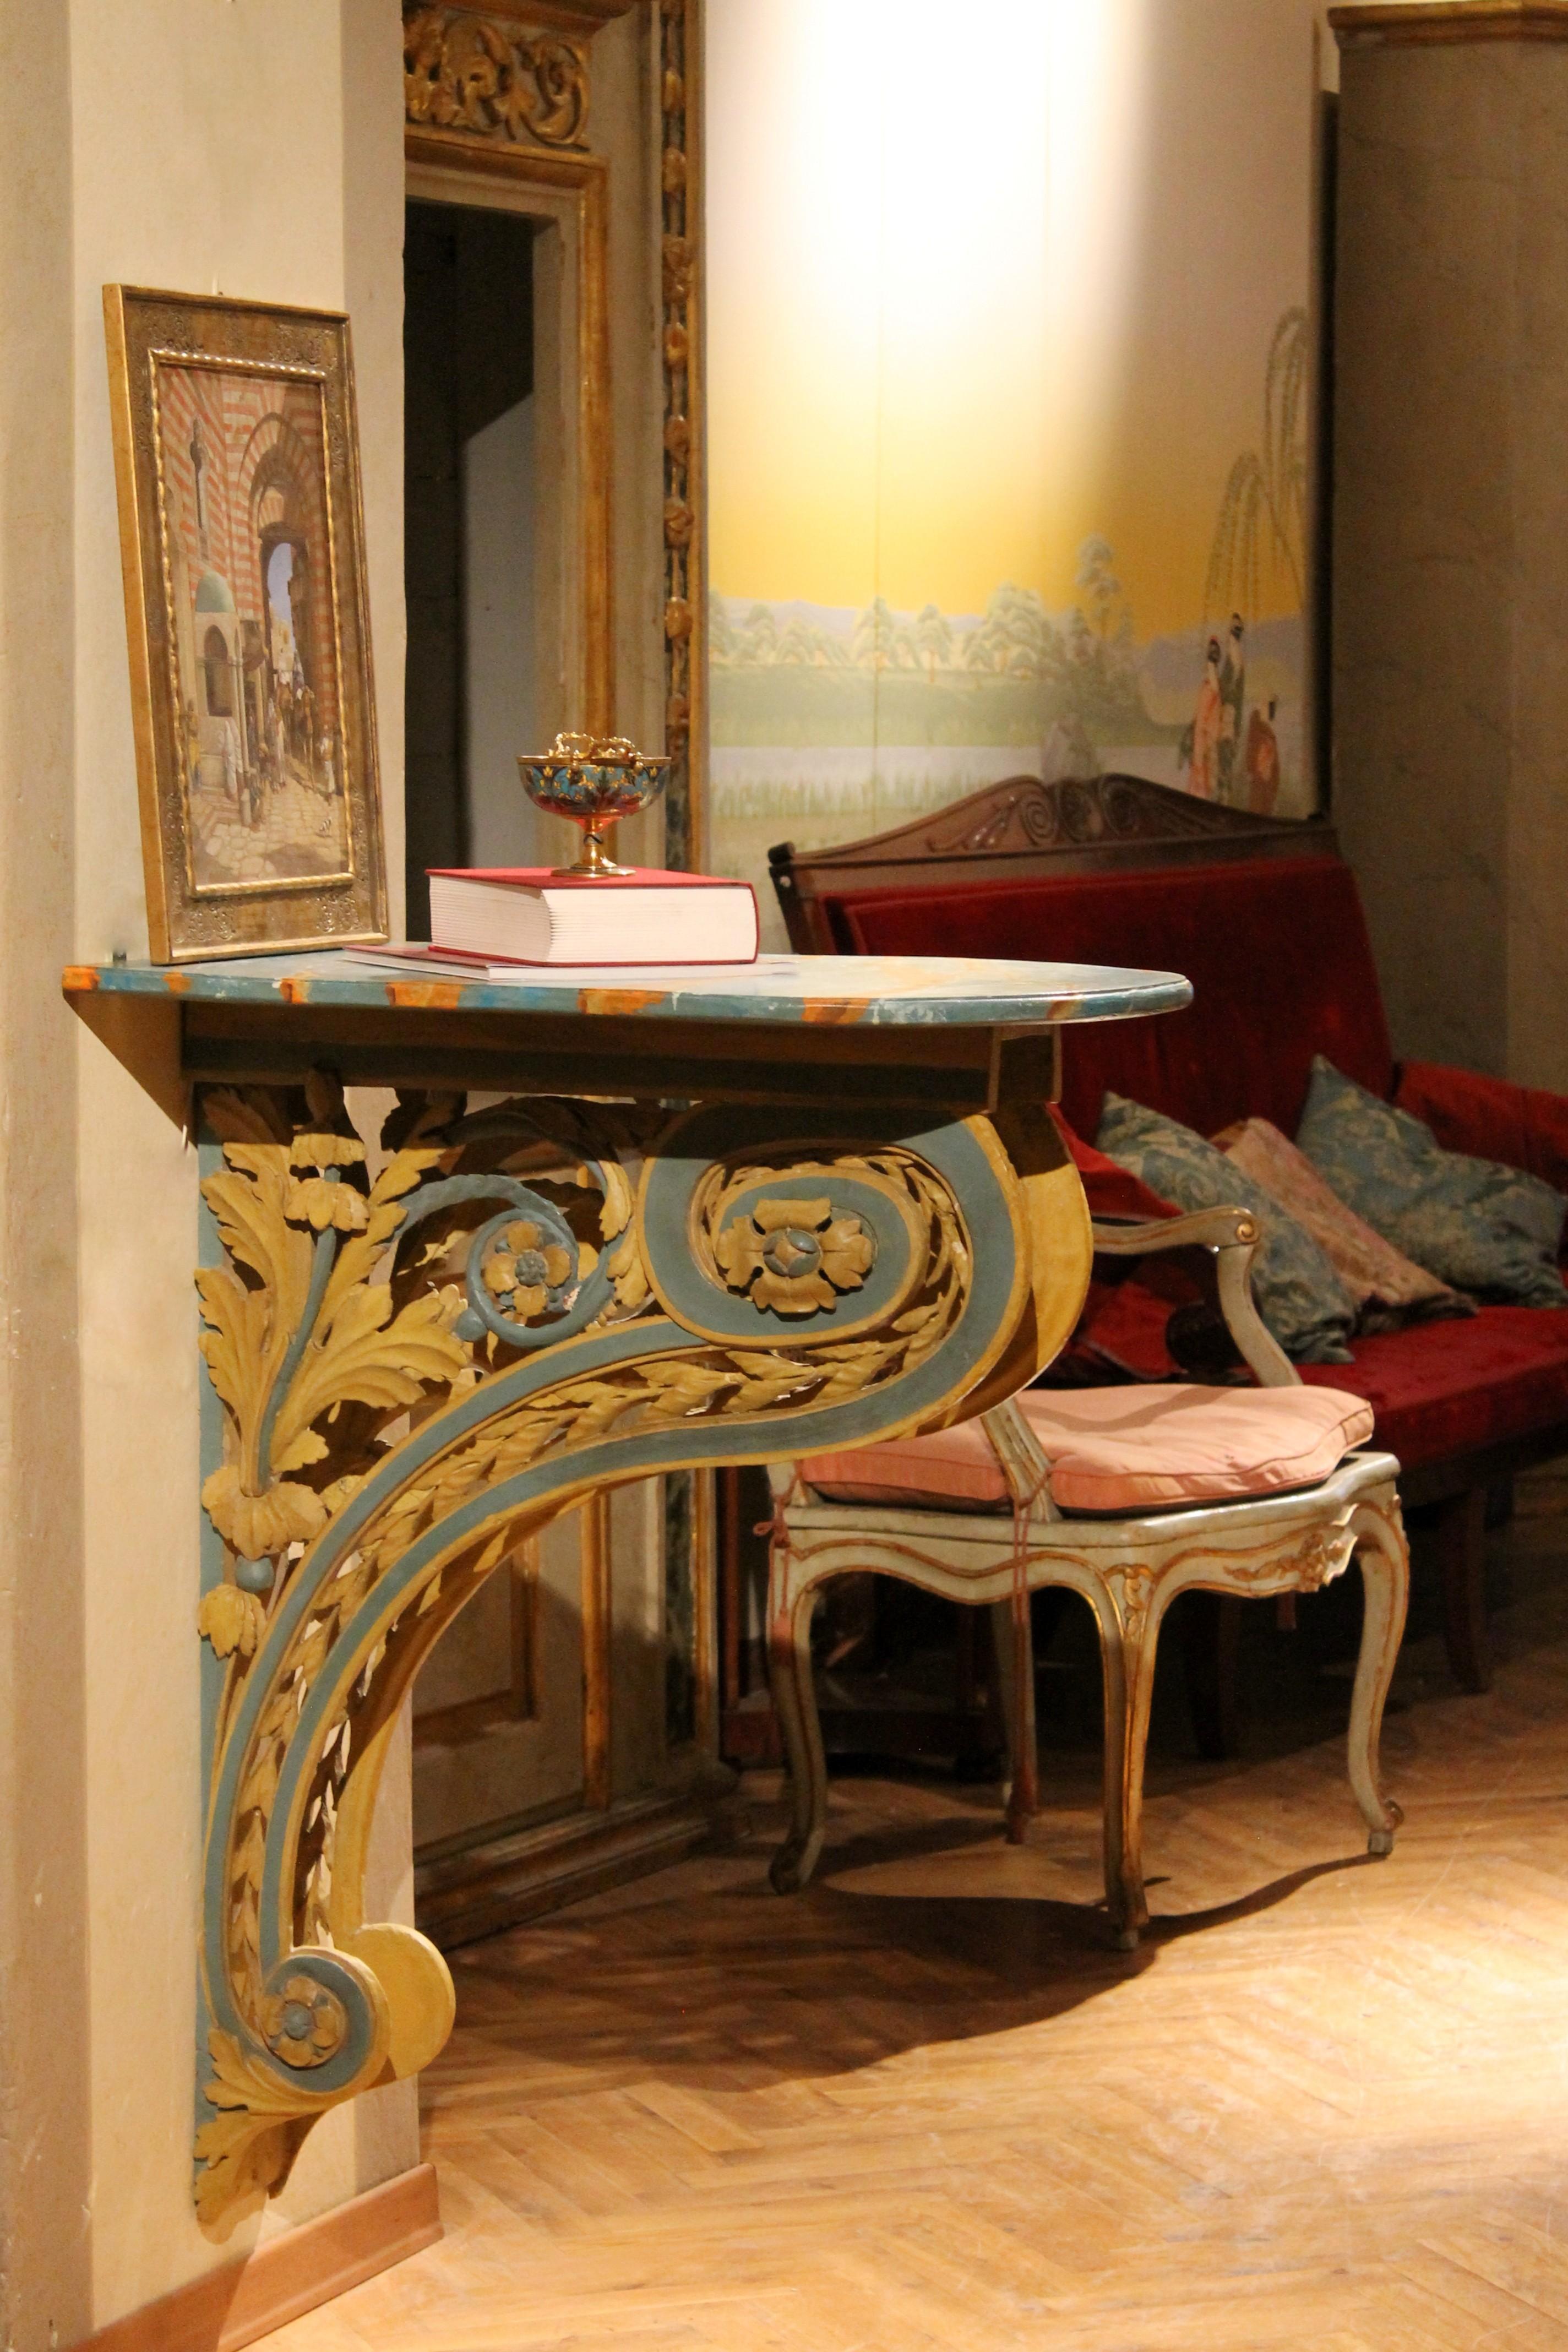 Paire de consoles murales italiennes en bois laqué et sculpté à la main d'époque Louis XVI, datant de la fin du XVIIIe siècle, avec des motifs floraux à enroulement et à percées élaborées.
Des sculptures à la main et des ajourages festonnés en